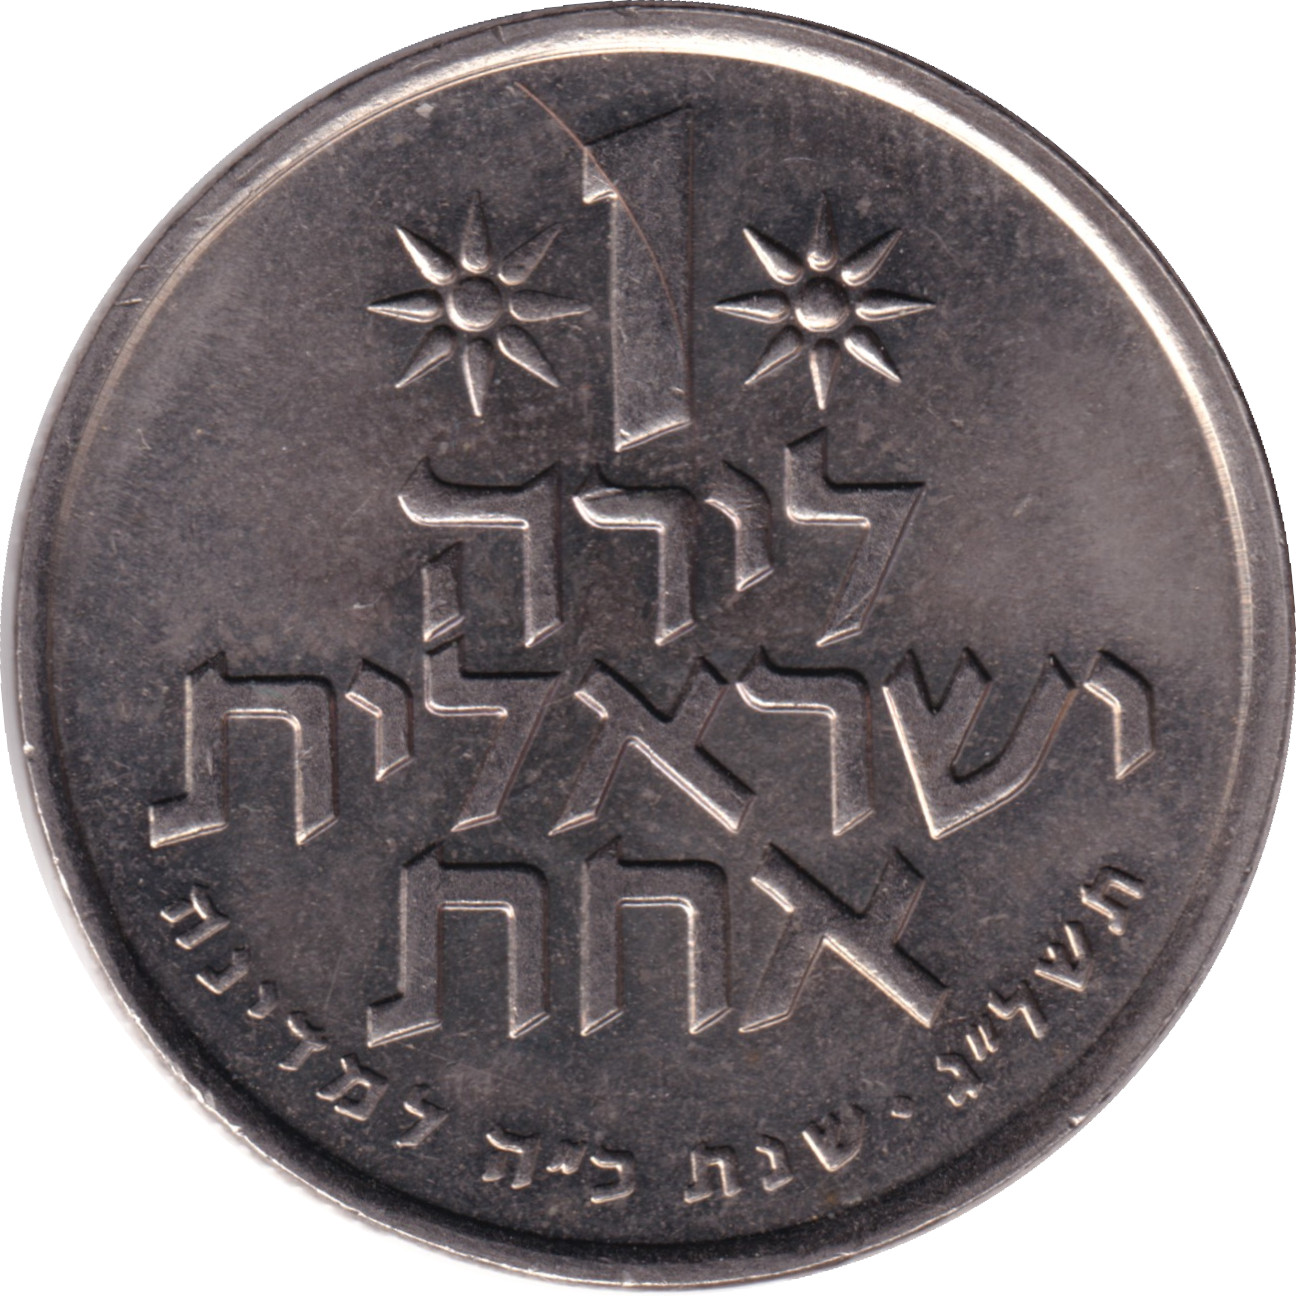 1 lira - Independence - 25 years